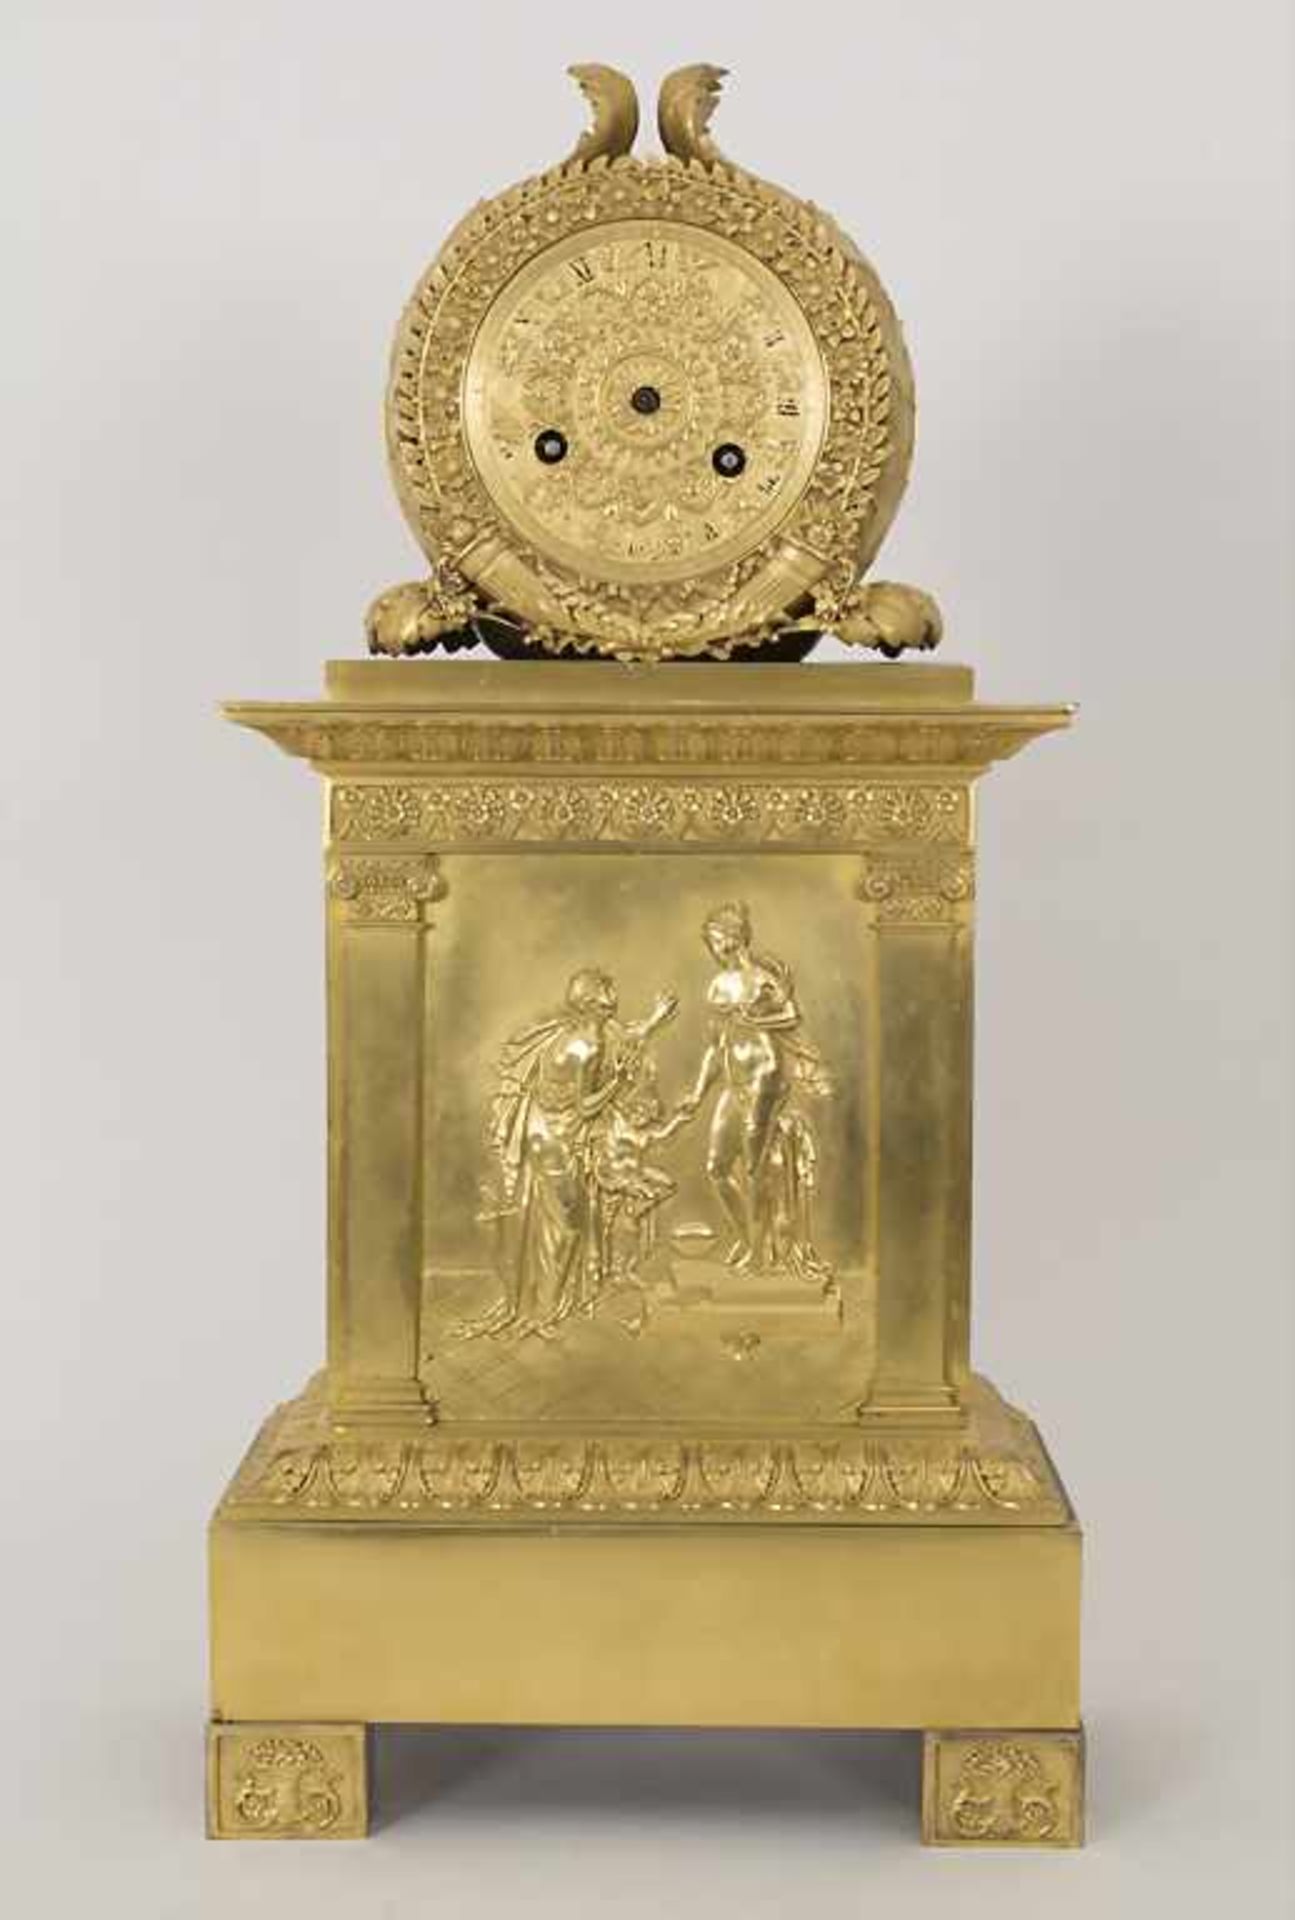 Empire Pendule 'Die Künste' / An Empire clock 'The fine arts', Paris, um 1800Gehäuse: Bronze,